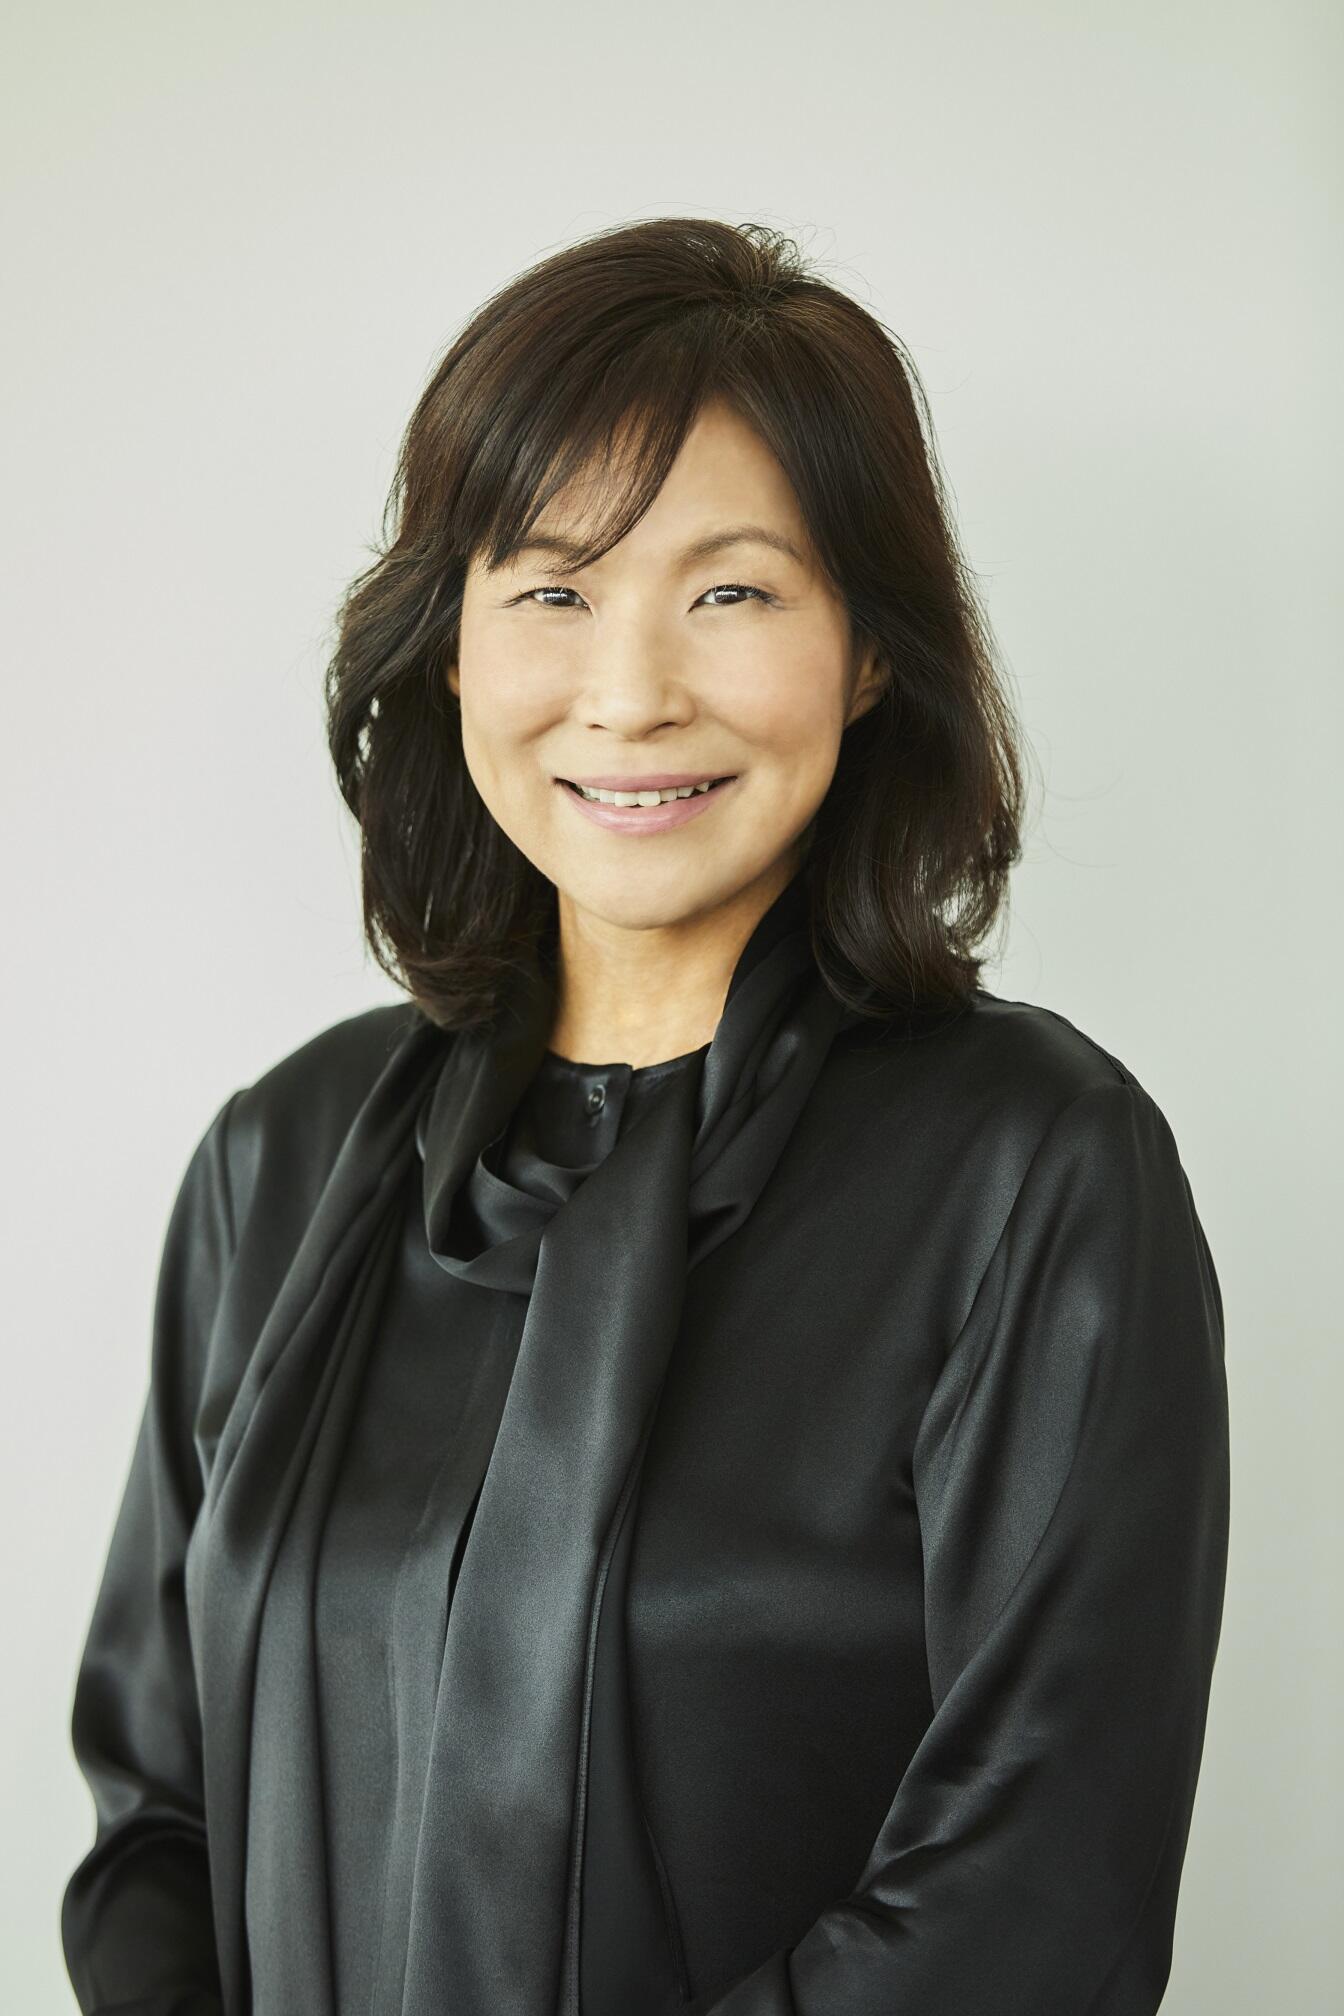 Ms. MURAKAMI Yumiko